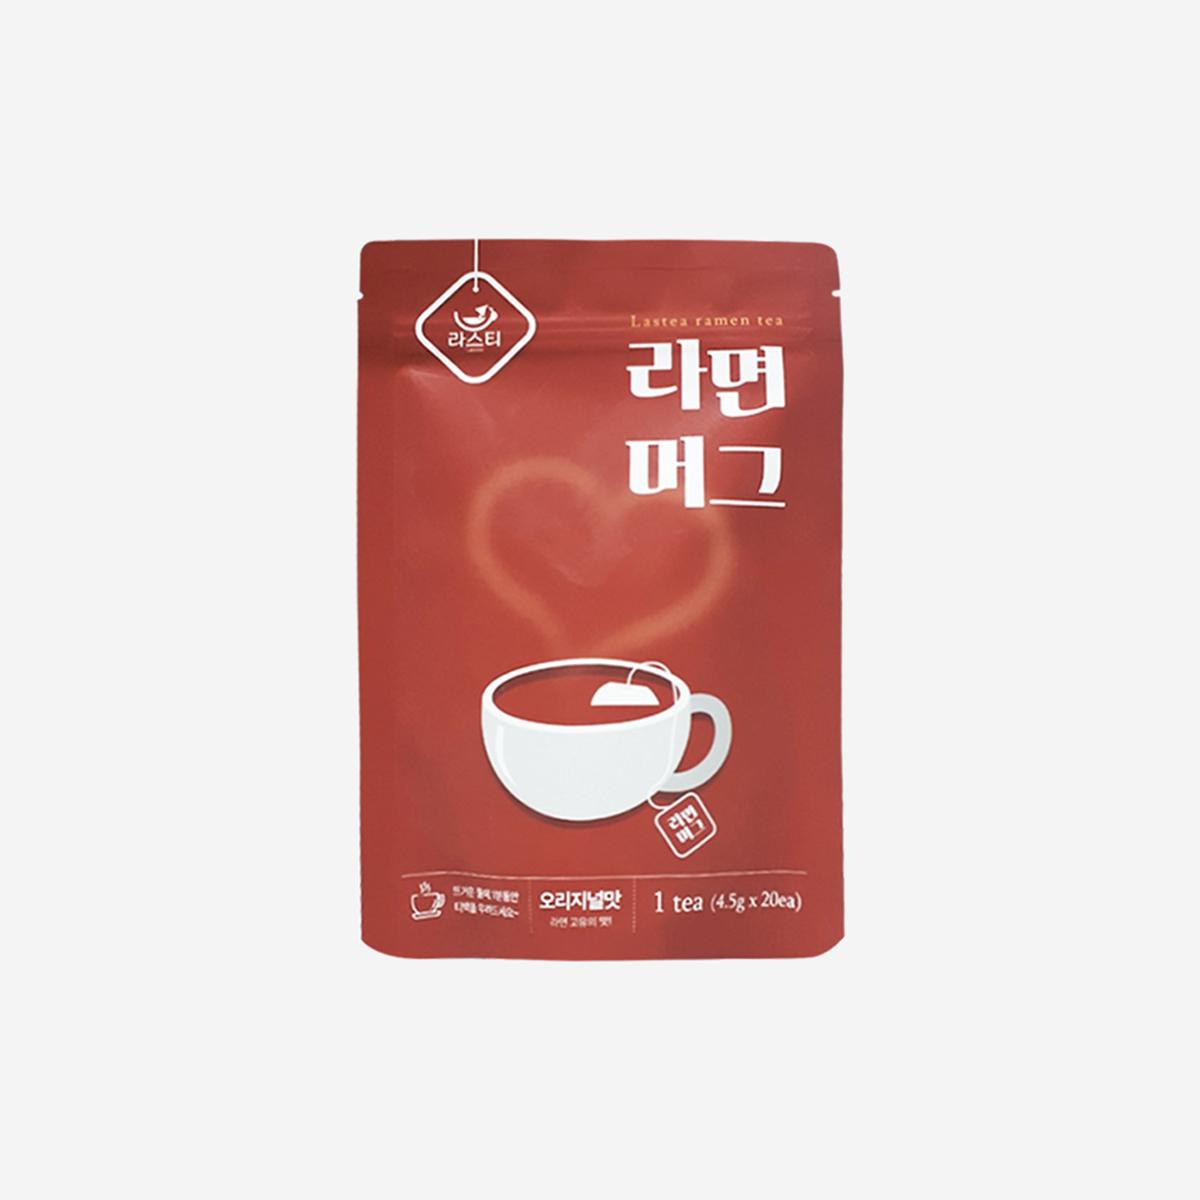 korean brand lastea's Ramen Tea Original pouch